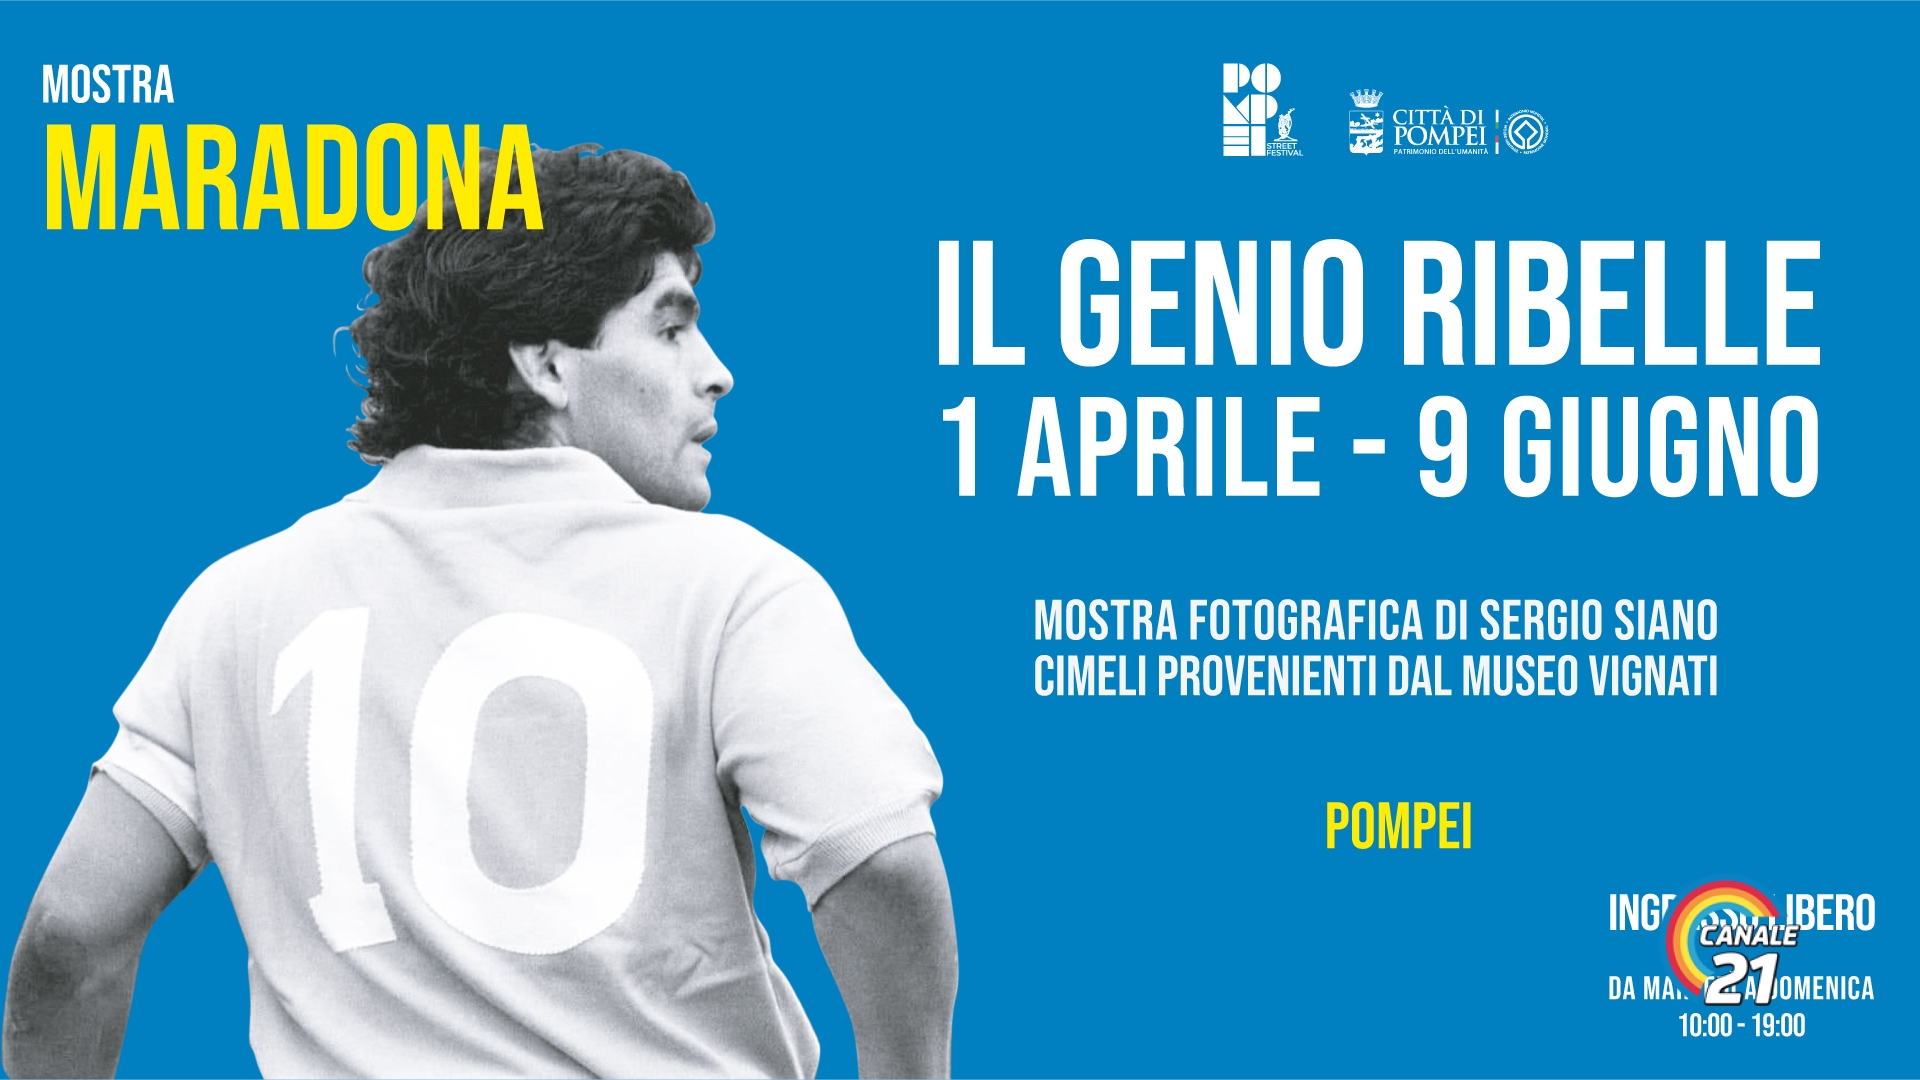 Pompei, dal 1 Aprile la mostra “Maradona, il genio ribelle”